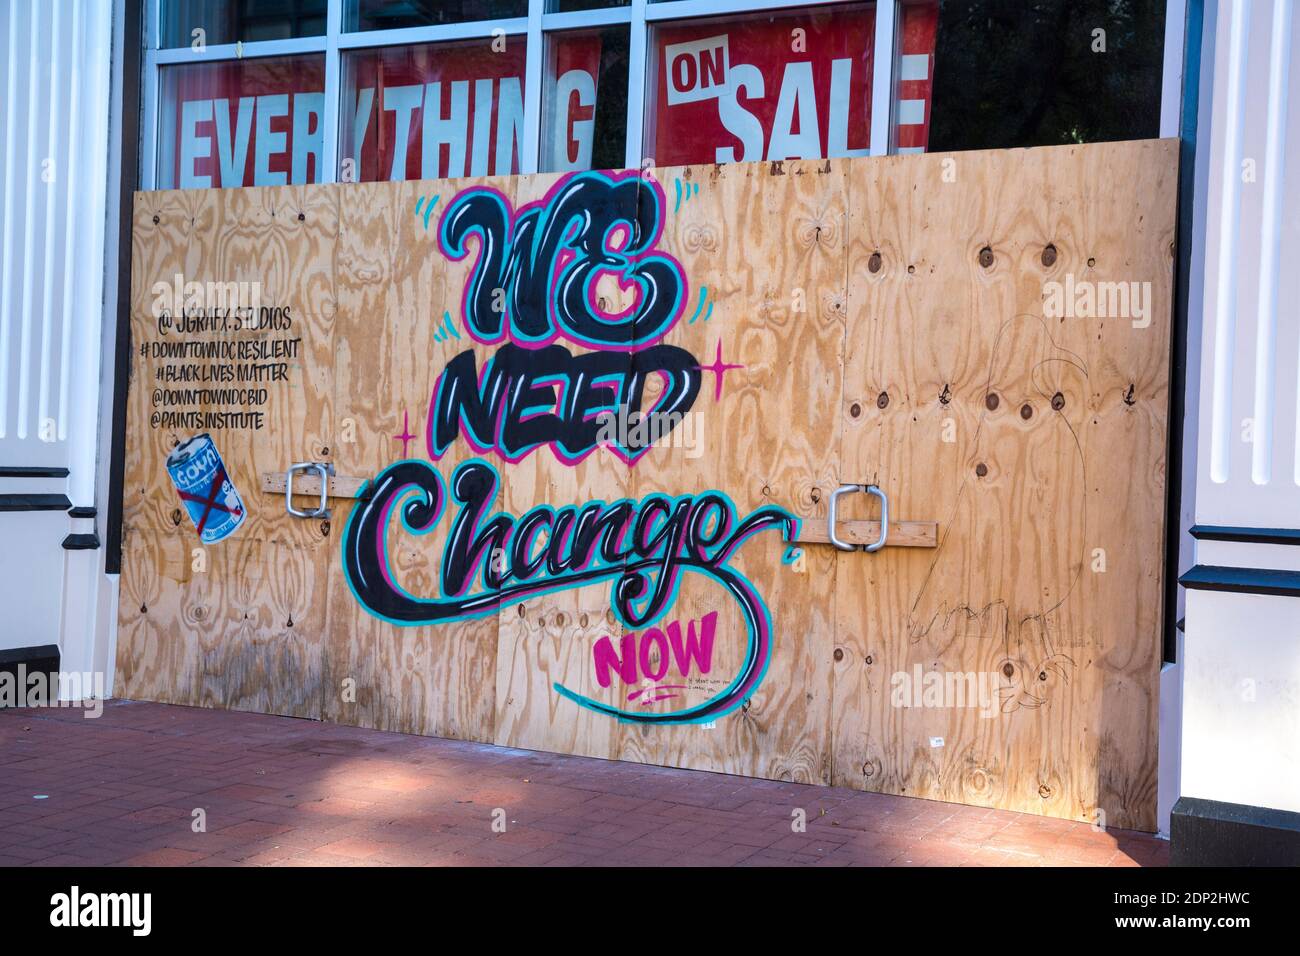 Graffiti chiede ora il cambiamento politico e sociale, Washington DC, USA, ottobre 2020. Le restrizioni di Covid-19 hanno portato alla chiusura del negozio. Foto Stock